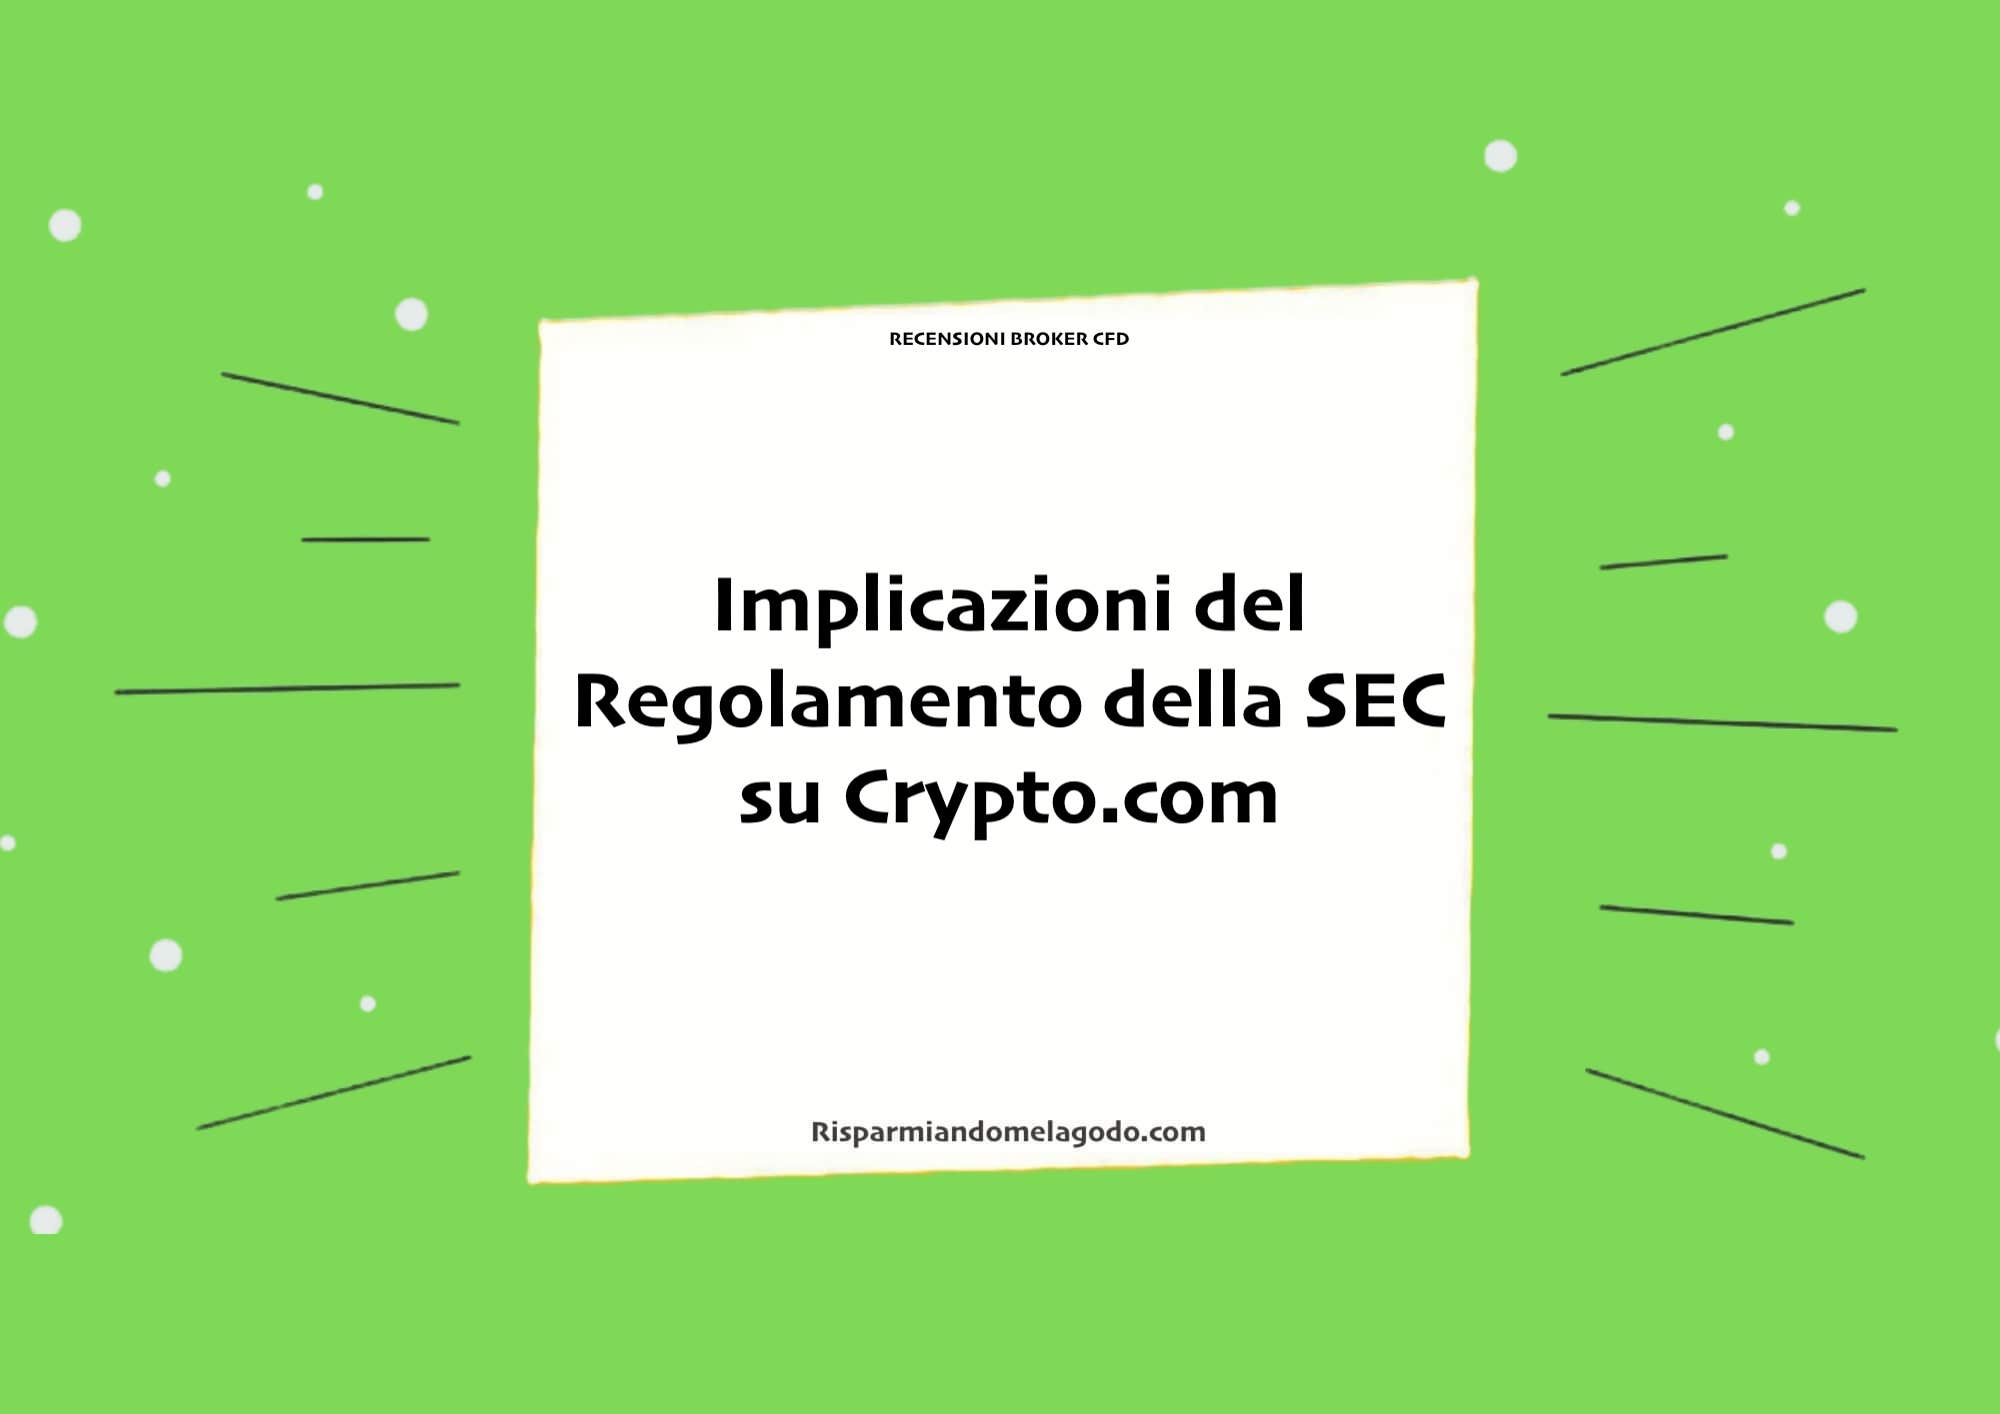 Implicazioni del Regolamento della SEC su Crypto.com